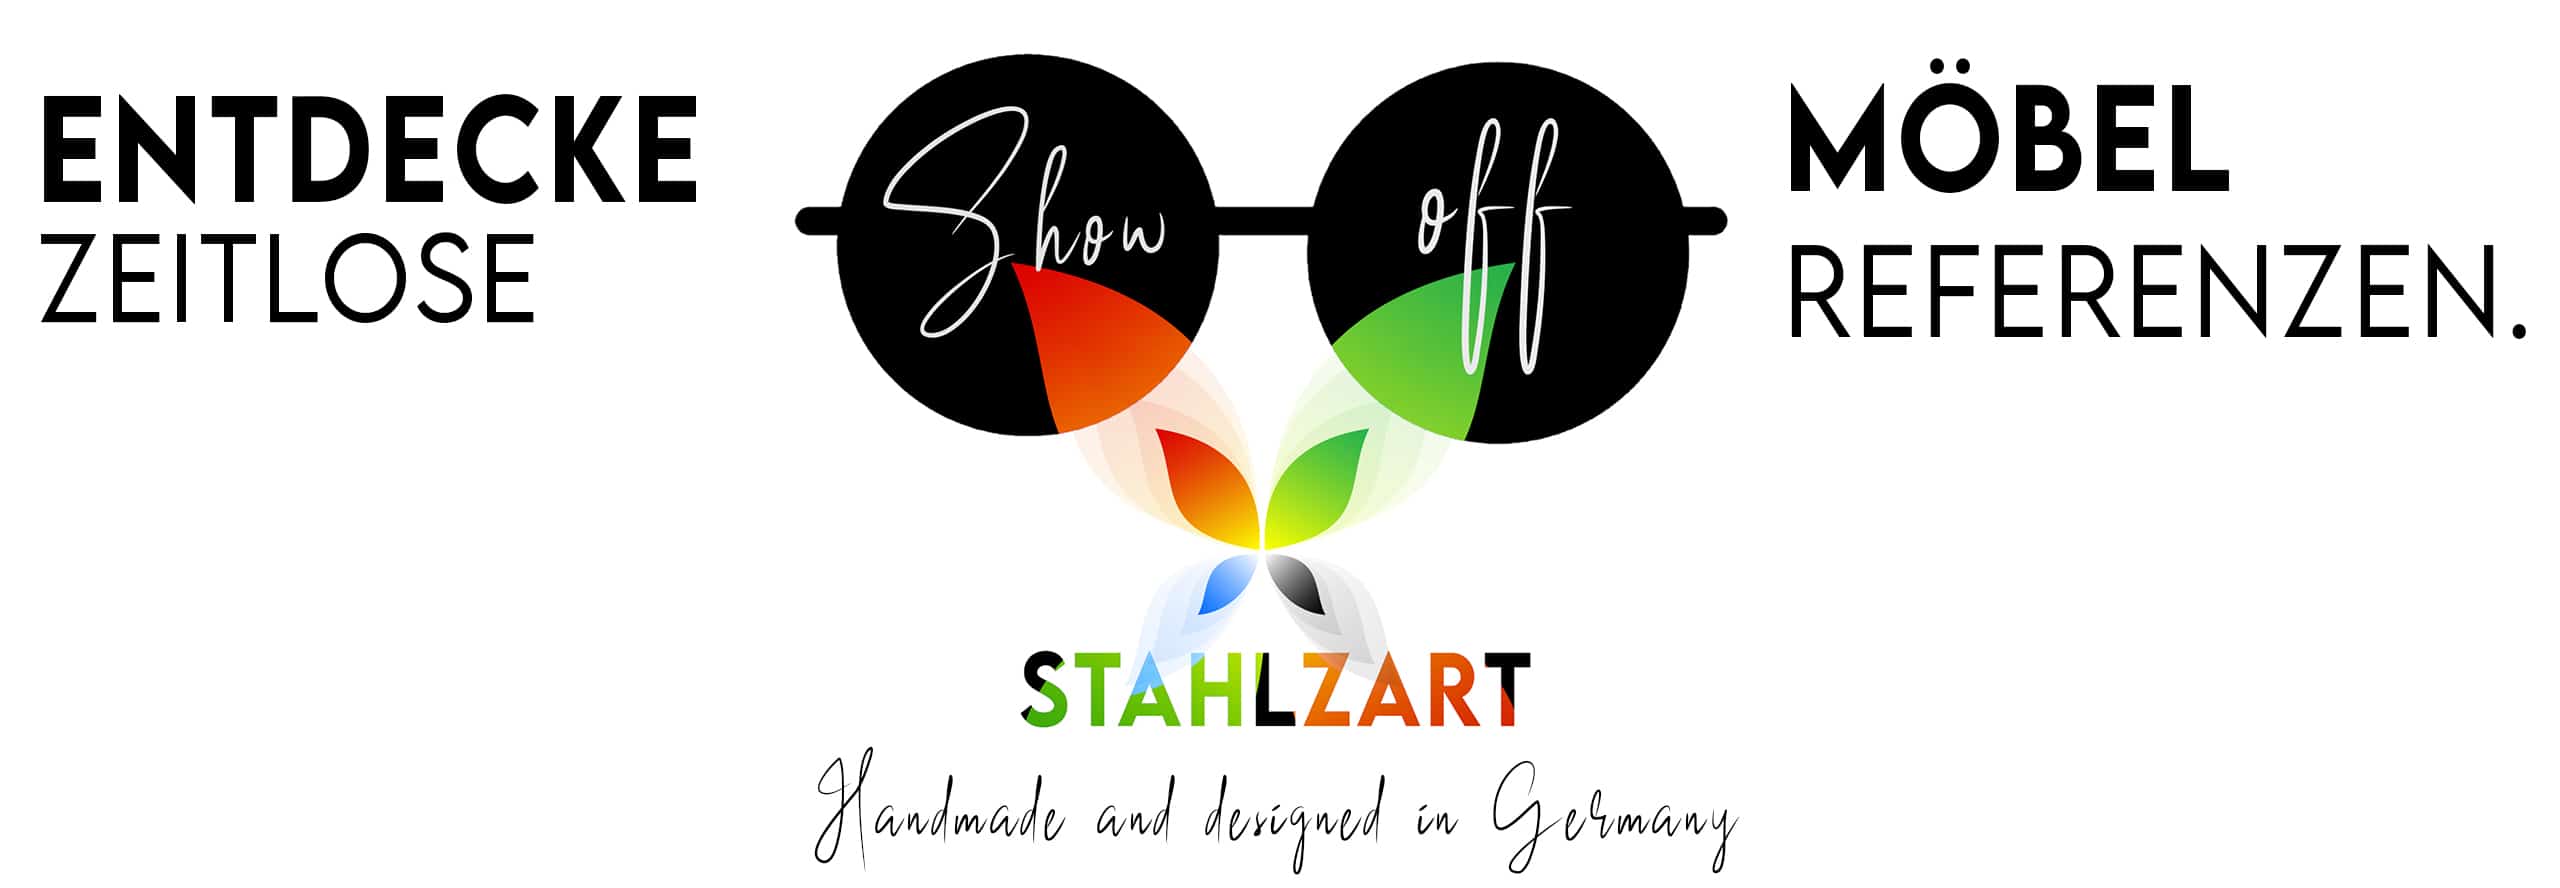 stahlzart-show-off-entdecke-zeitlose-stahlzart-moebel-referenzen-aus-holz-metall-in-weiss-schwarz-grau-bunt-nachhaltig-handmade-and-designed-in-germany